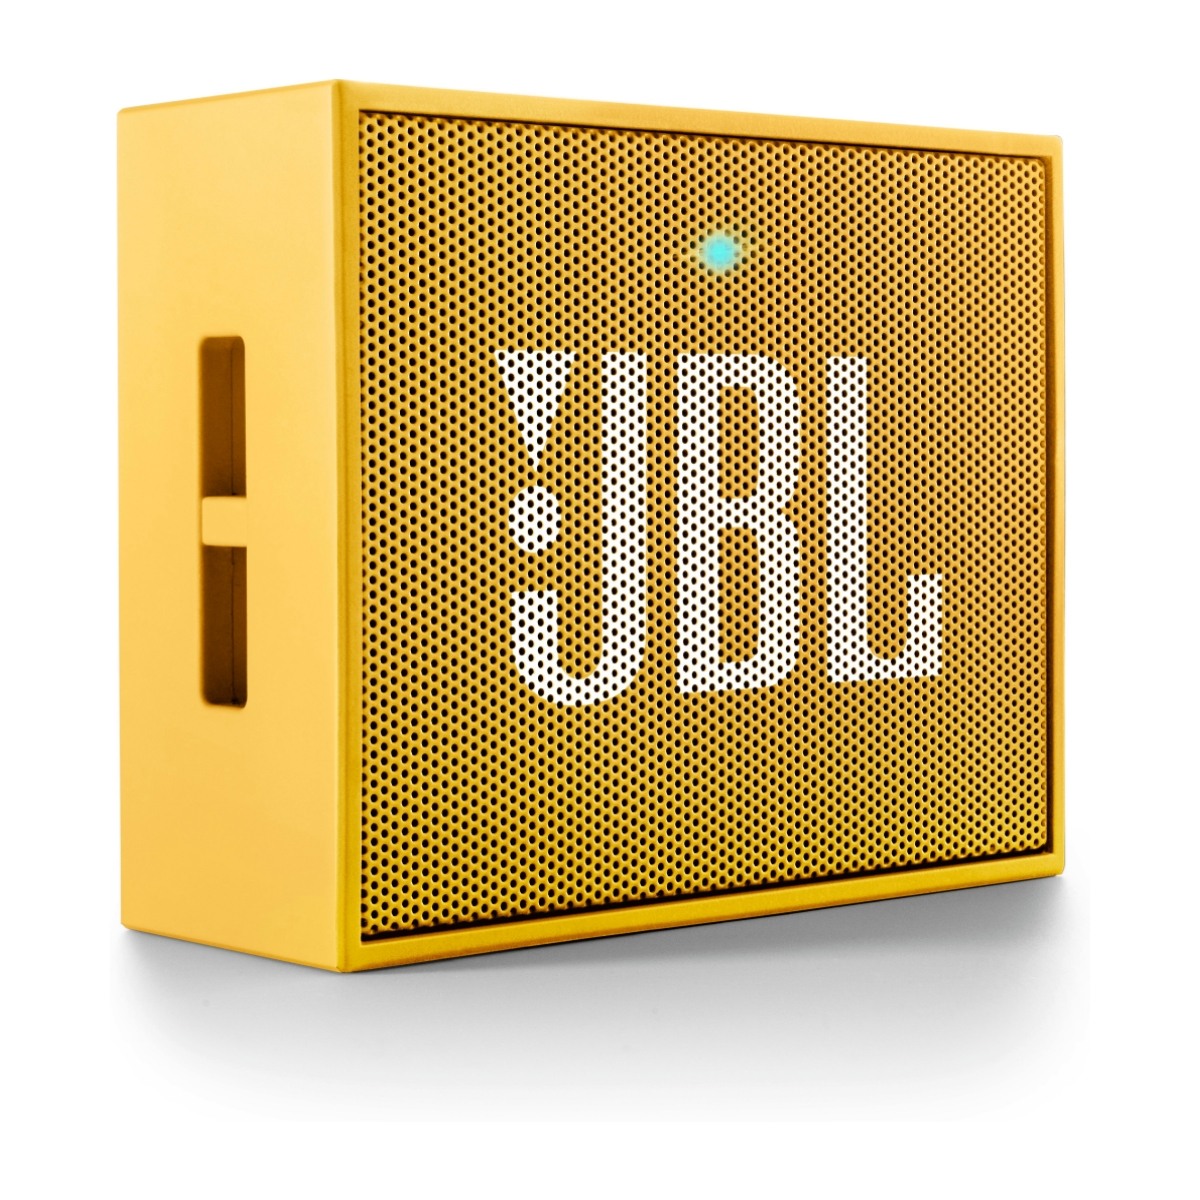 Колонка jbl квадратная. Жбл го 1. Колонка JBL go 3 (Gray). JBL go желтая. Колонки JBL квадратики.